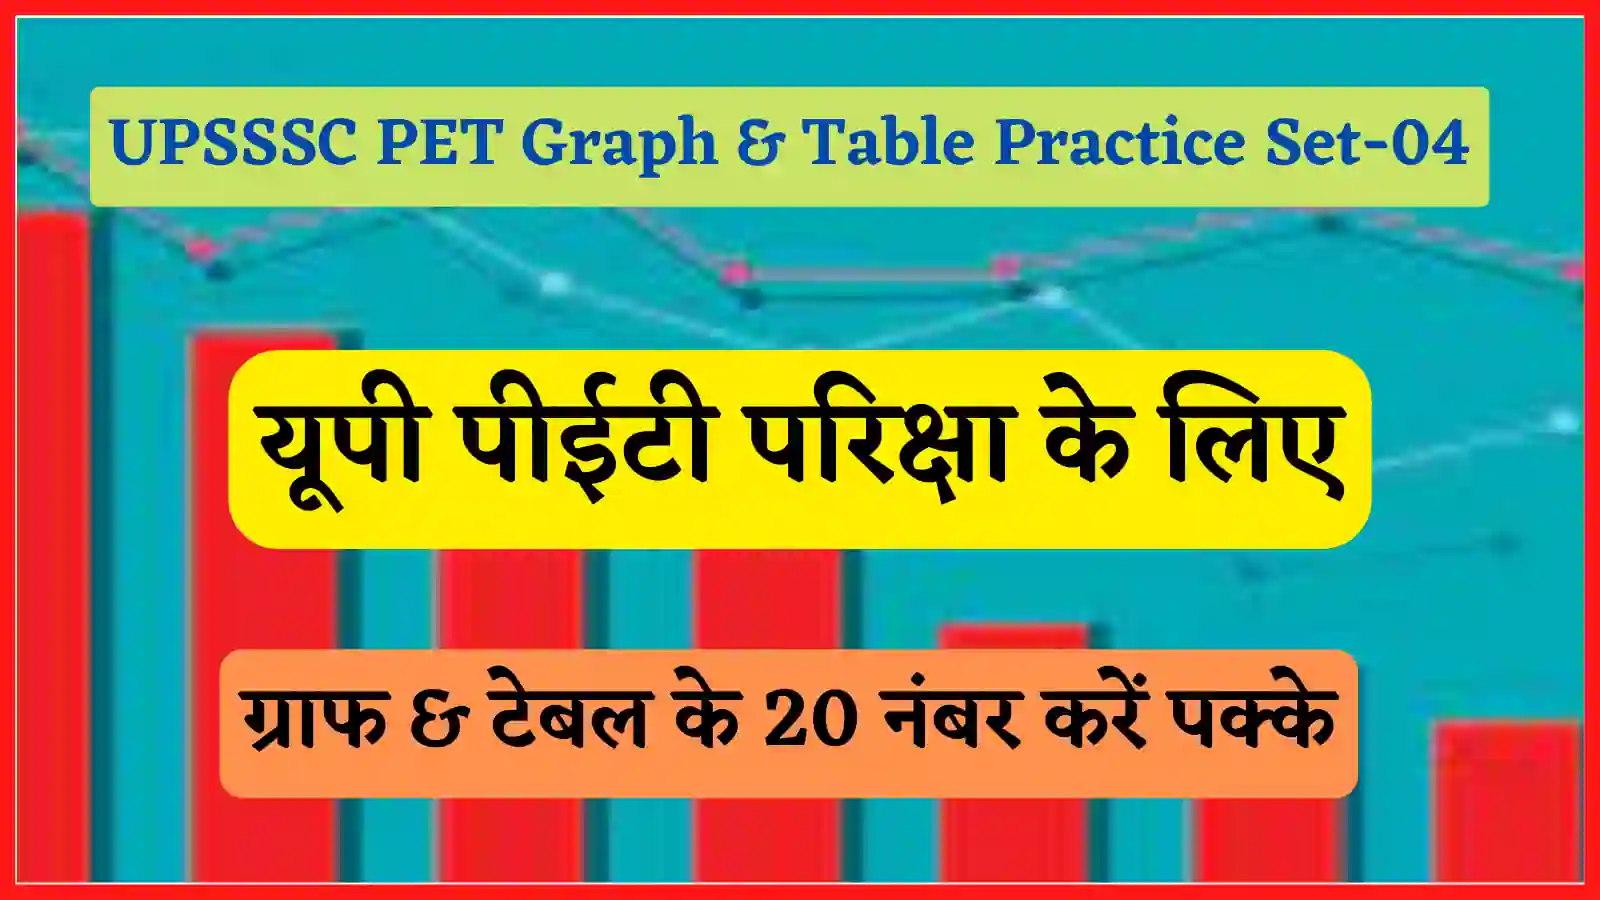 UPSSSC PET Graph & Table Practice Set-04